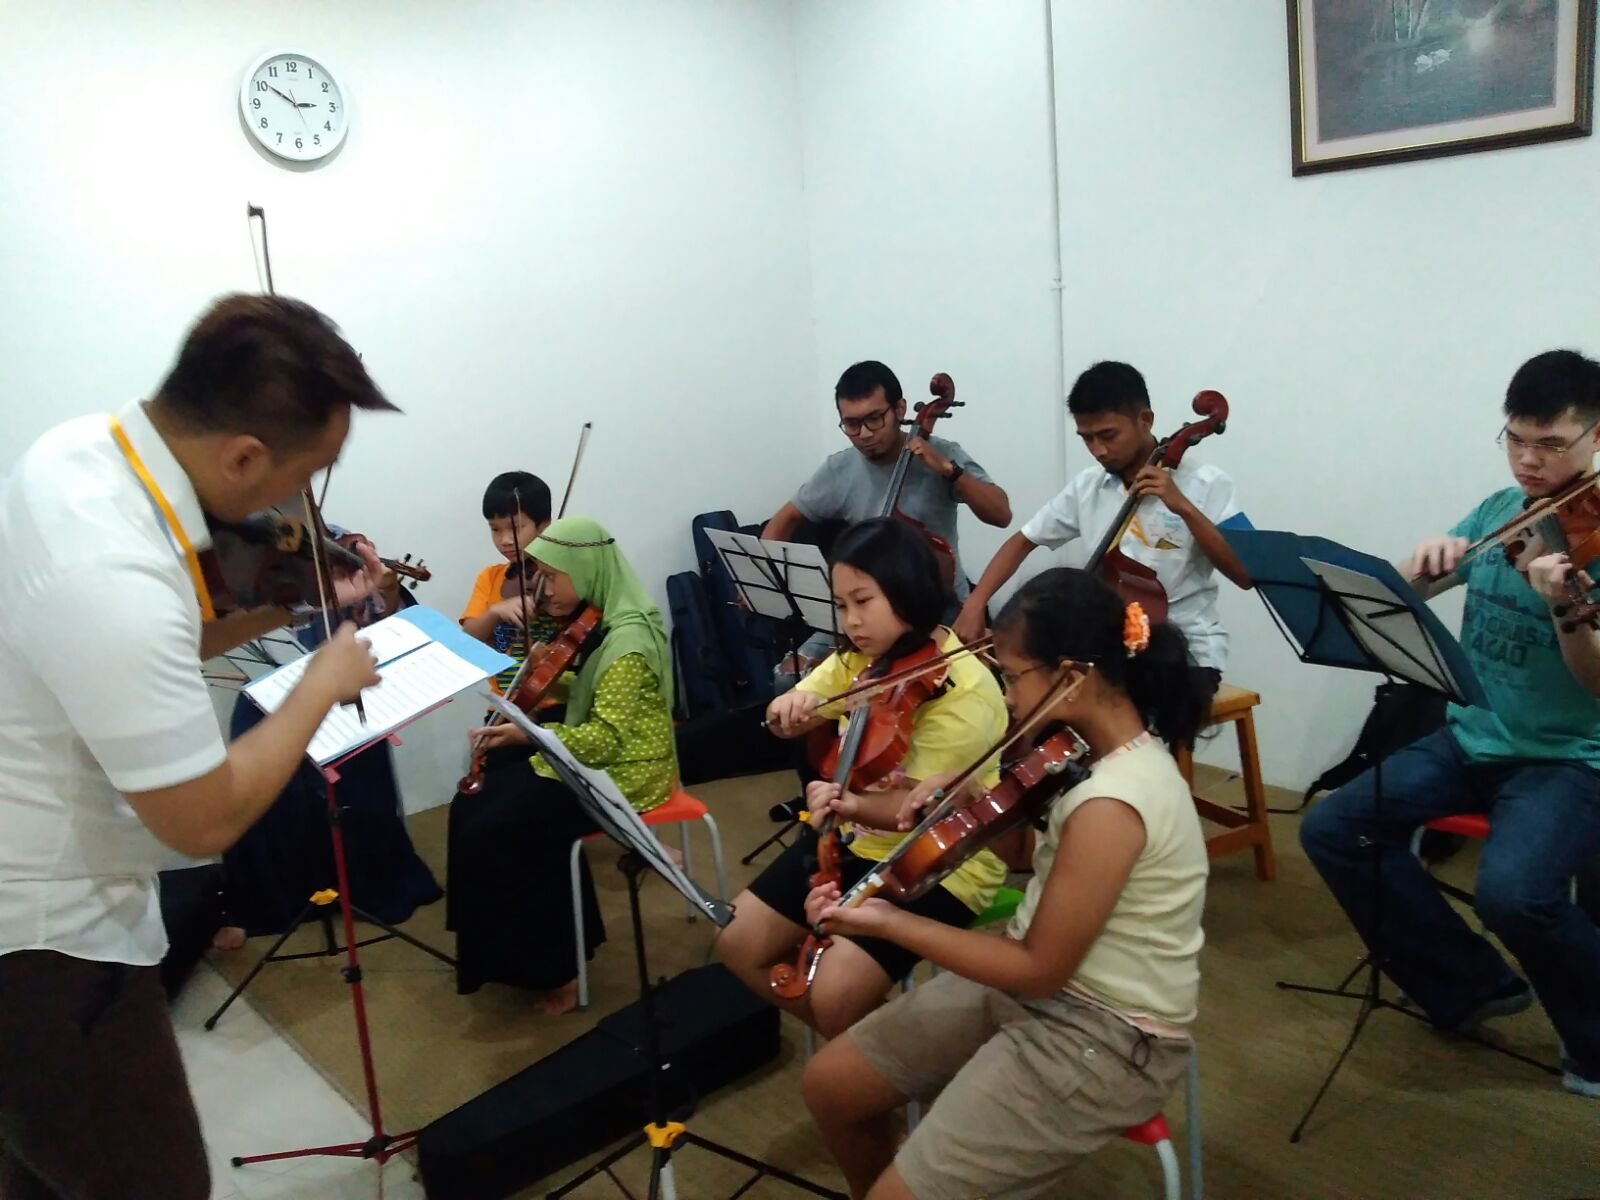 PELUANG BISNIS TERBARU DI KOTA BANDUNG Analisa Peluang Bisnis Kursus Musik Di Bandung 